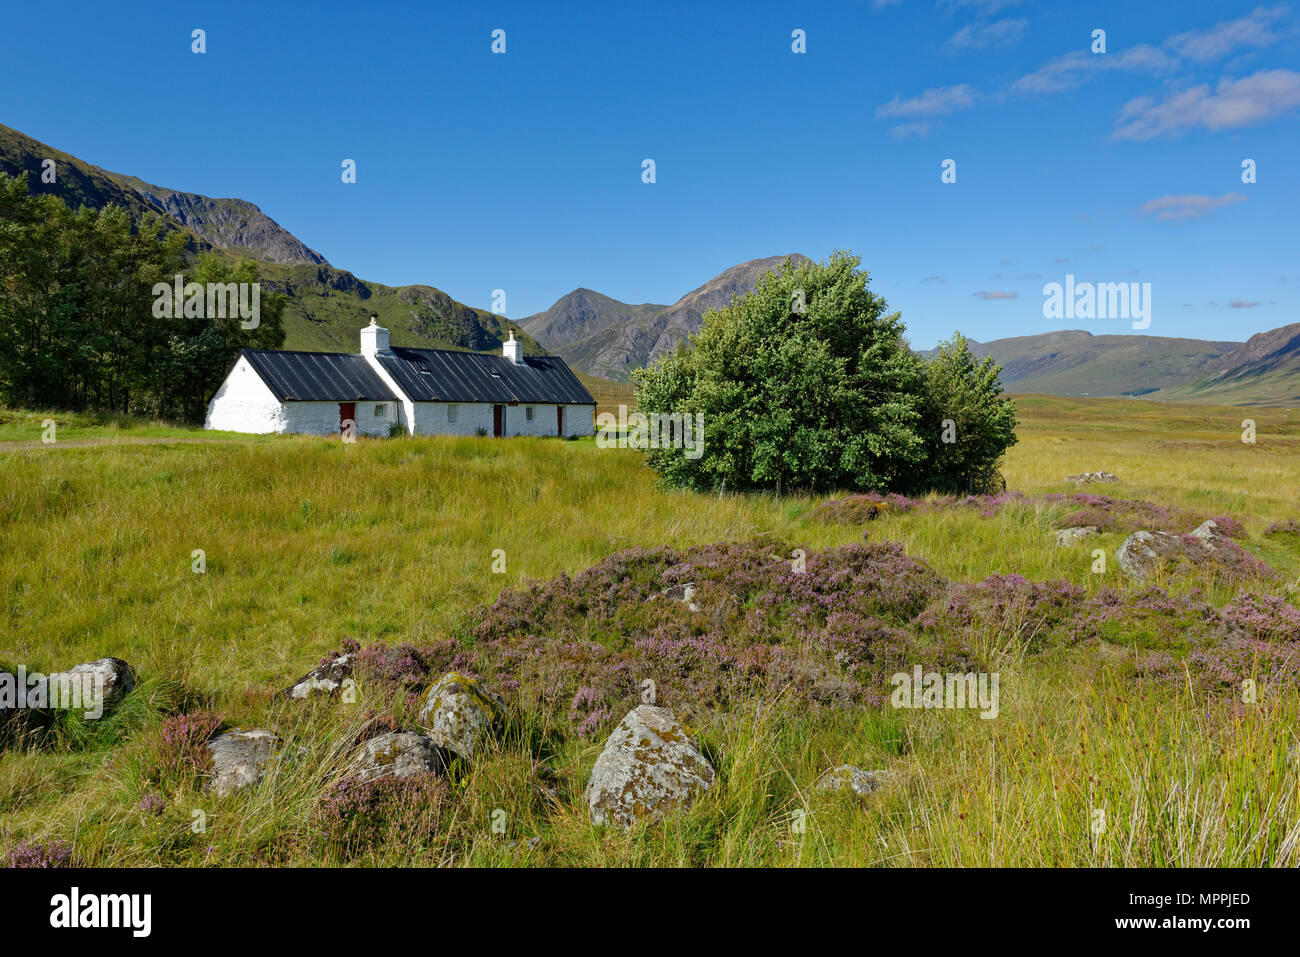 United Kingdom, Scotland, Highland, Buachaille Etive Mor, Glencoe, Black Rock Cottage, farmhouse Stock Photo